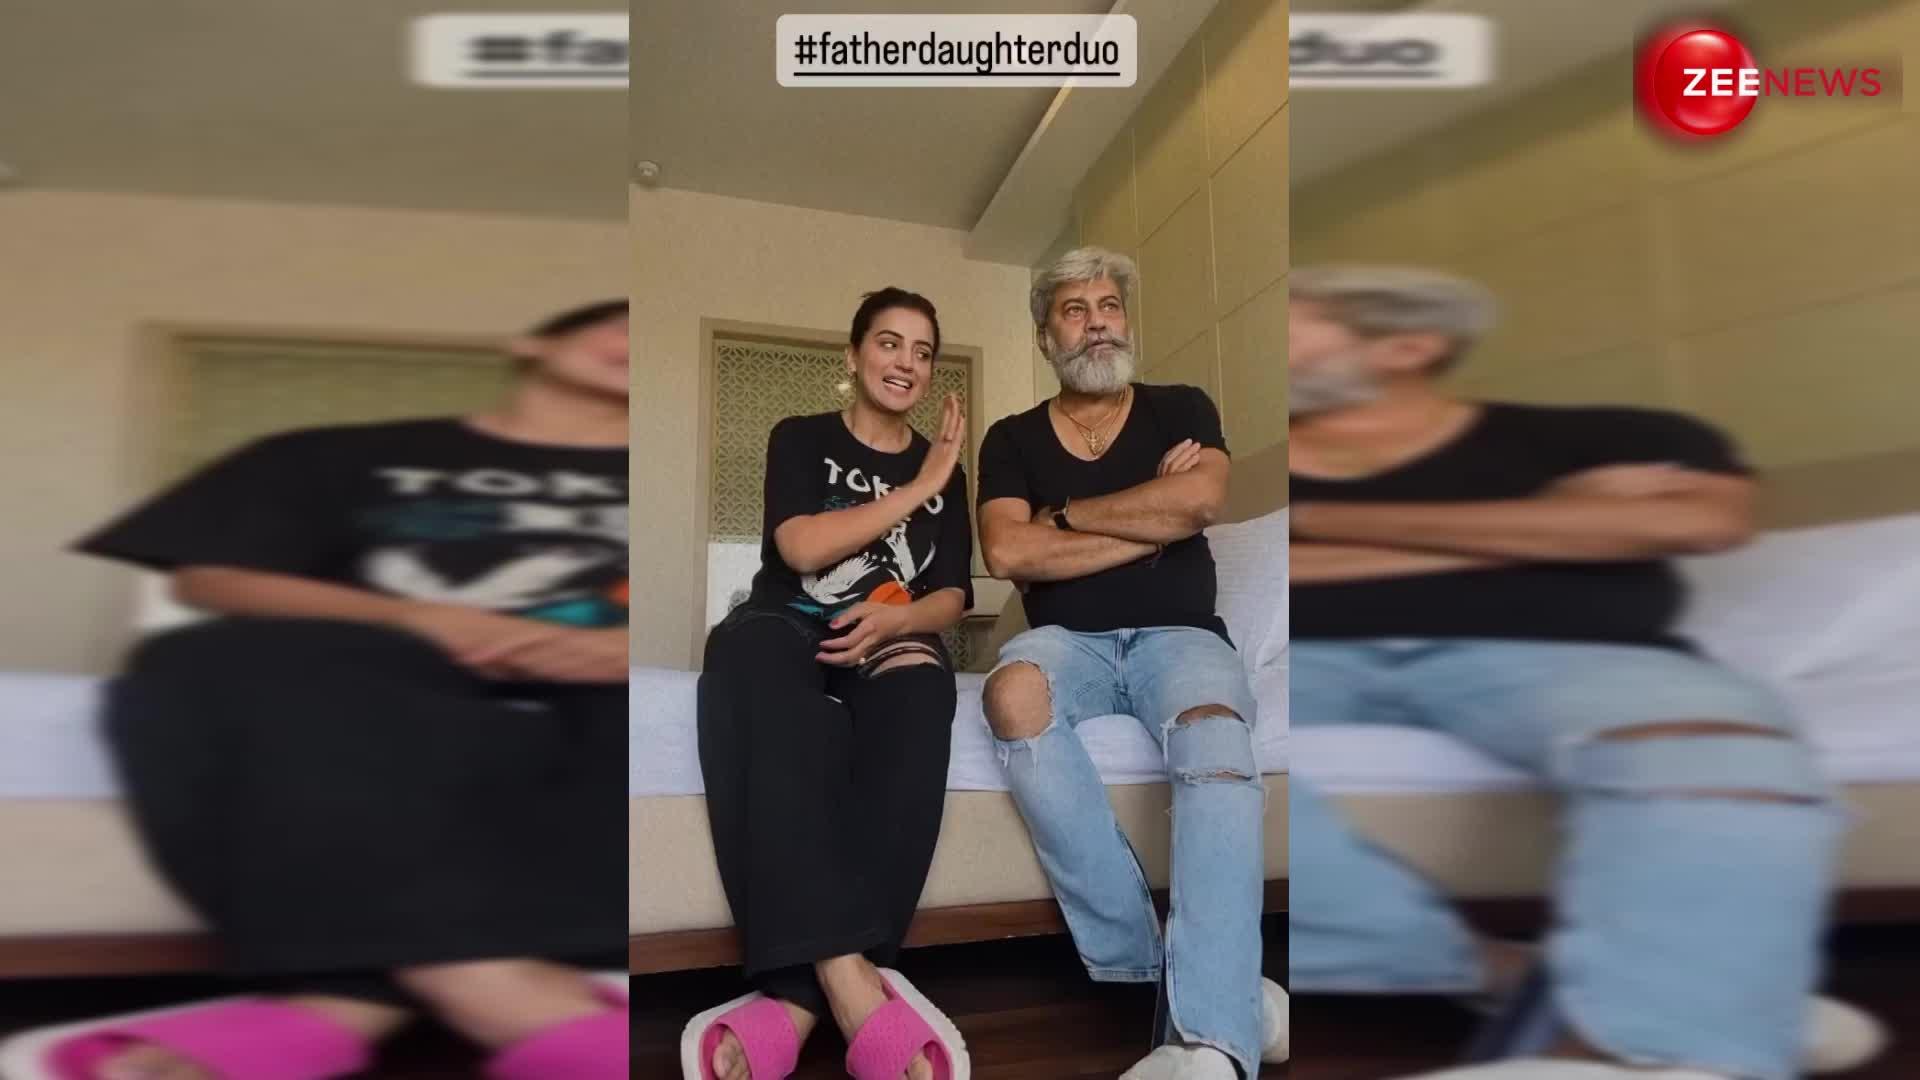 Akshara Singh ने बेड पर लेट अपने पापा के साथ बना डाला ऐसा वीडियो, देख छूटे लोगों के पसीने